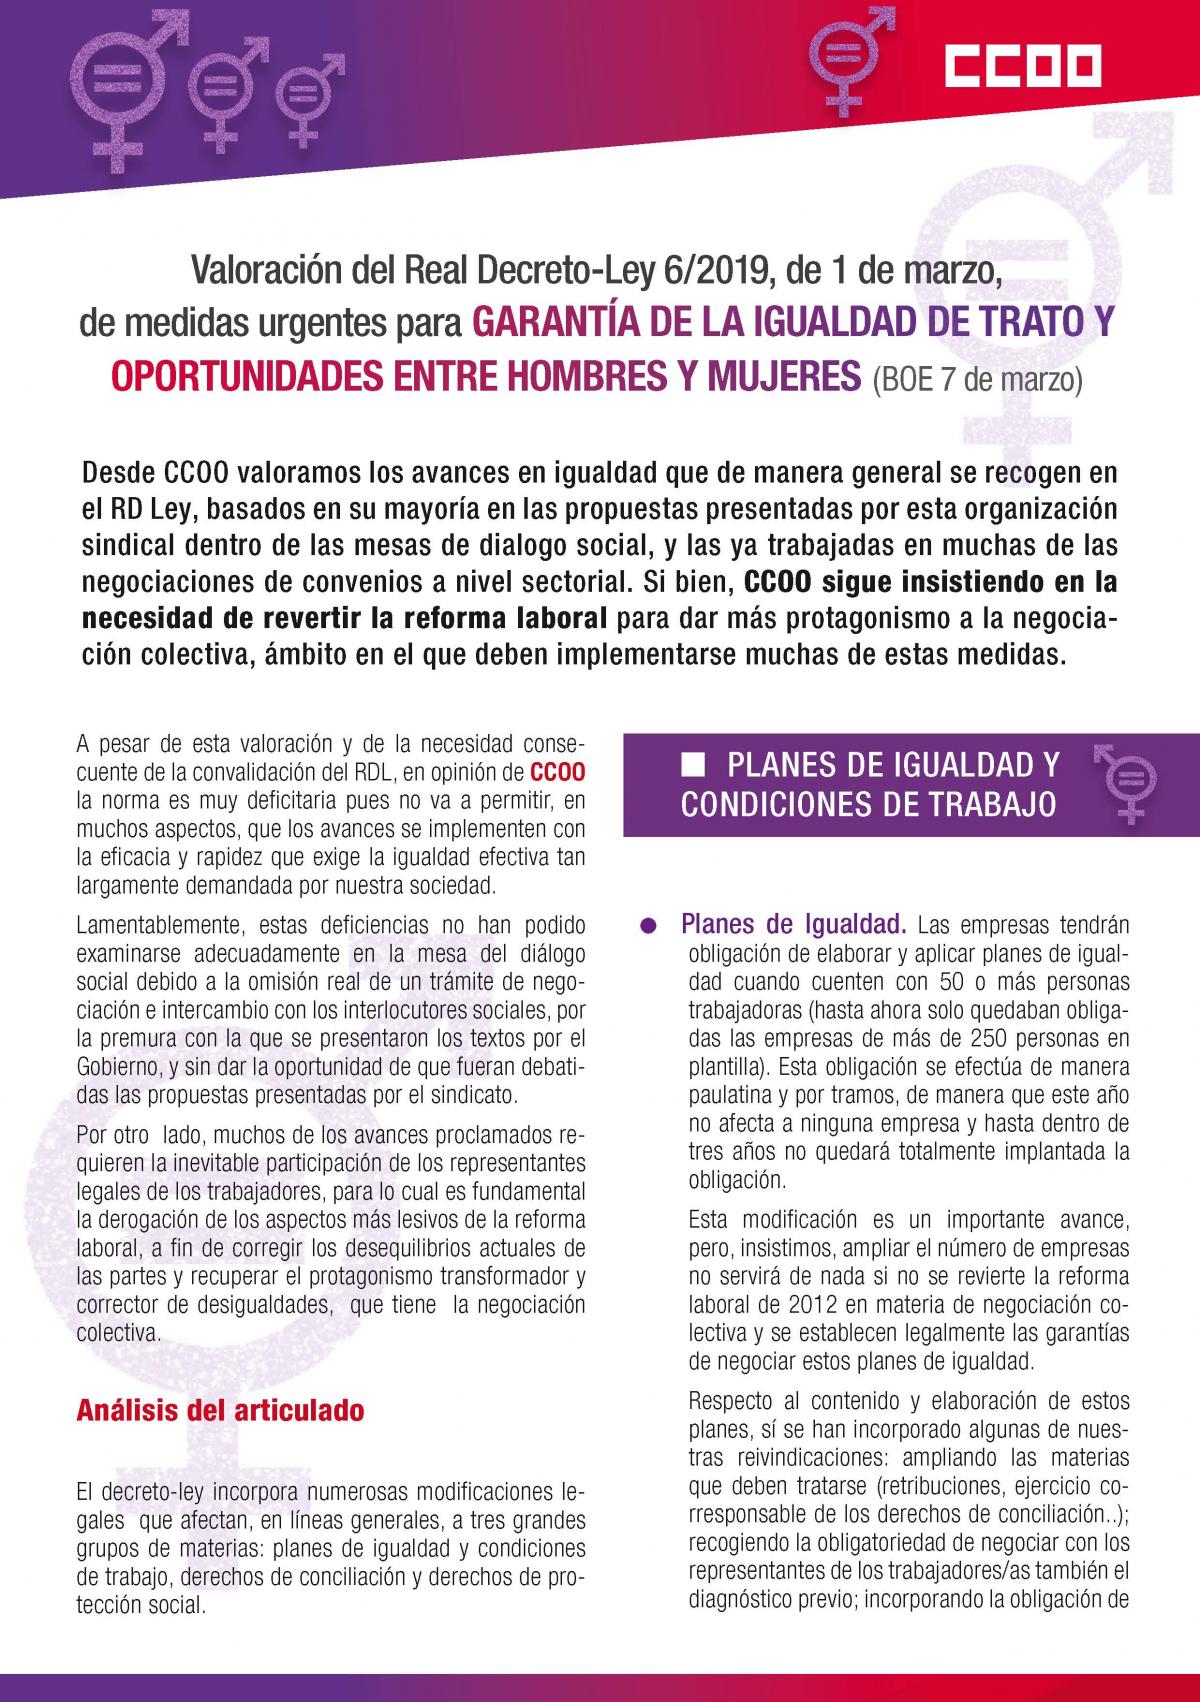 Valoracin del Real Decreto-Ley 6/2019, de 1 de marzo, de medidas urgentes para garanta de la igualdad de trato yoportunidades entre hombrfes y mujeres (BOE 7 de marzo).